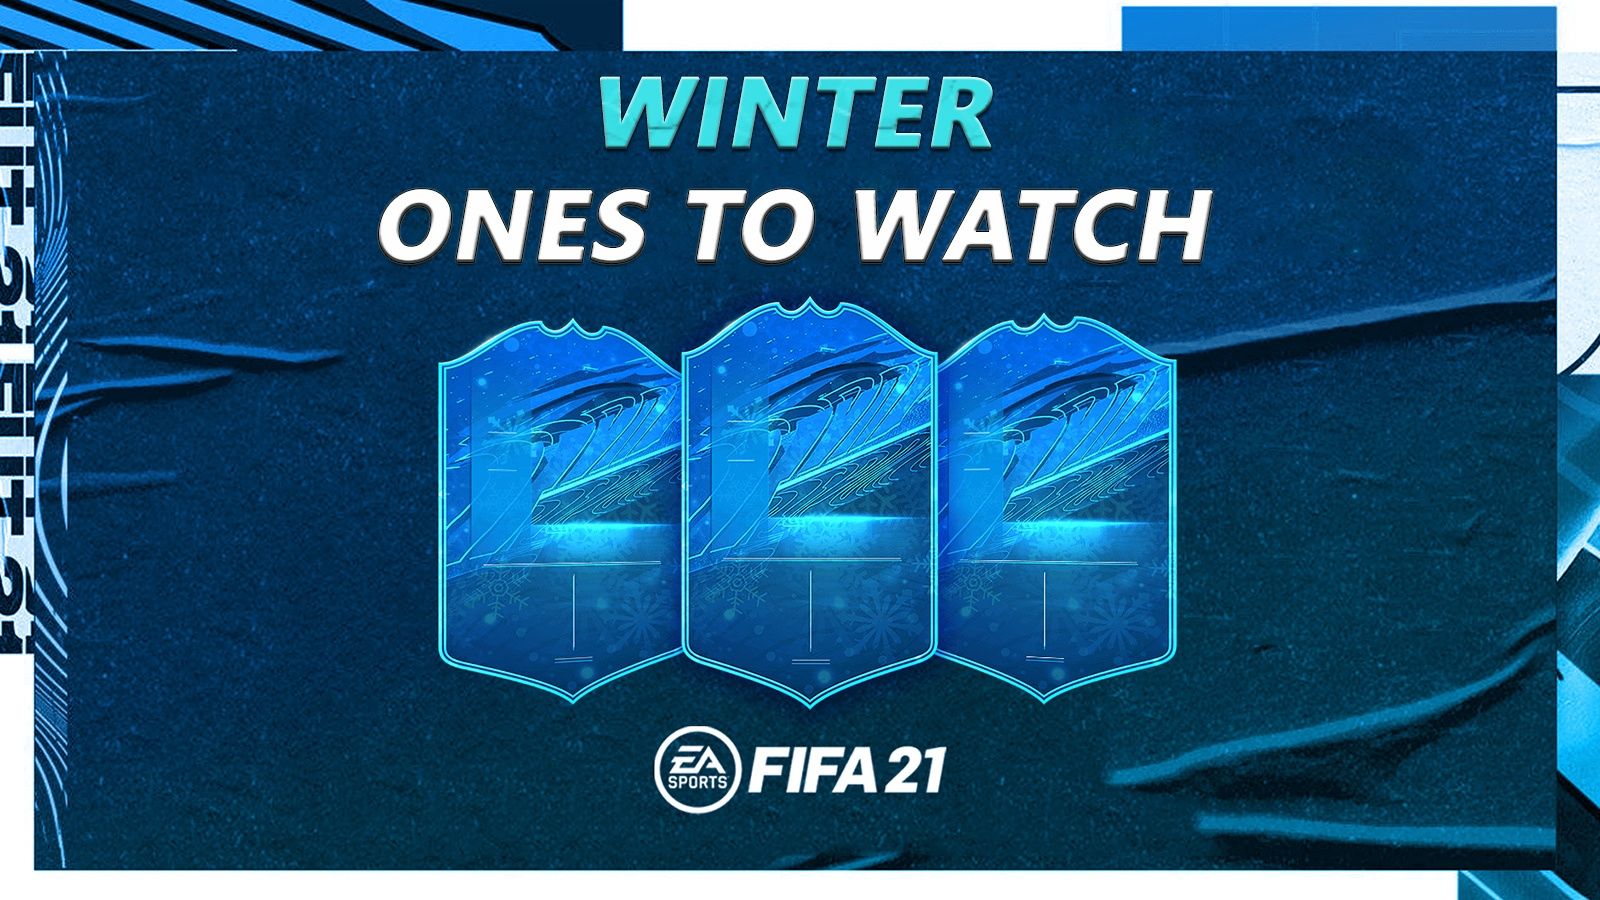 Événement Winter OTW FIFA 21 : Date, prédictions et plus - Dexerto.fr